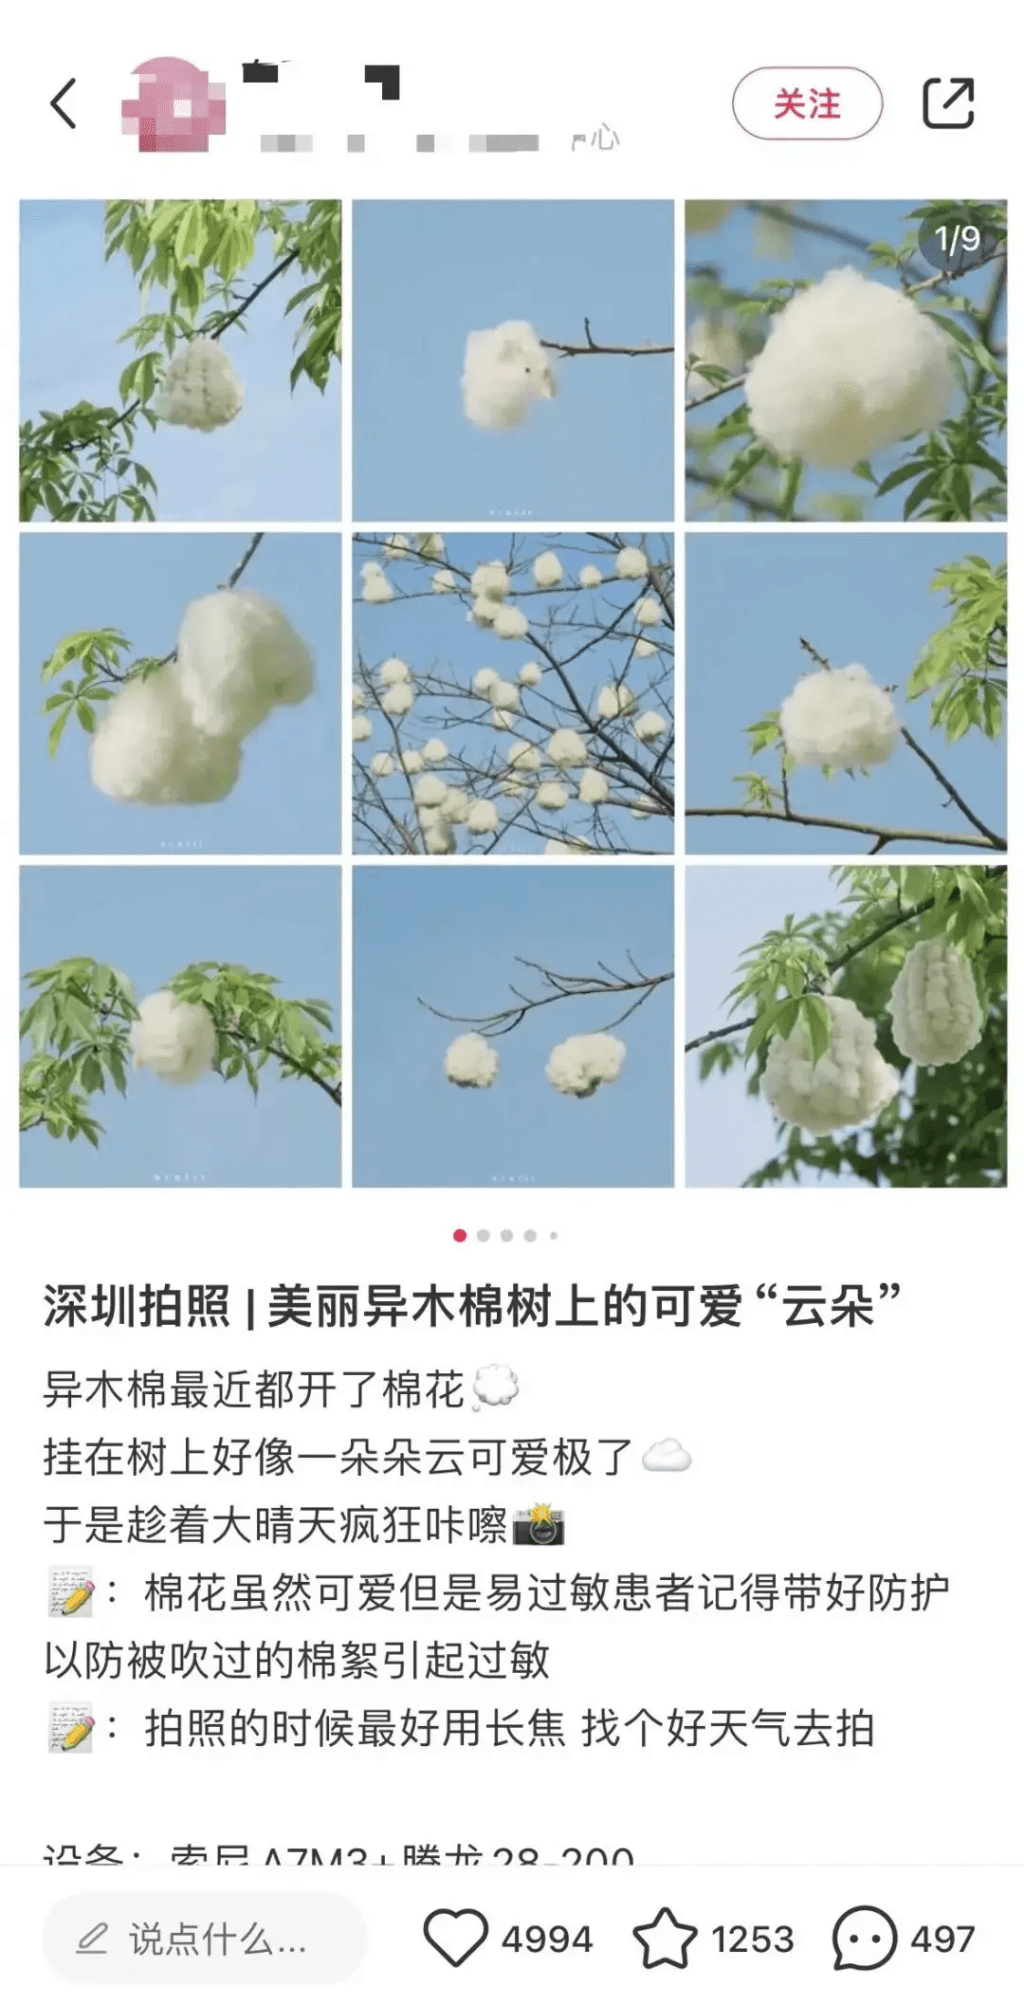 网民形容木棉果实有如一朵朵云。